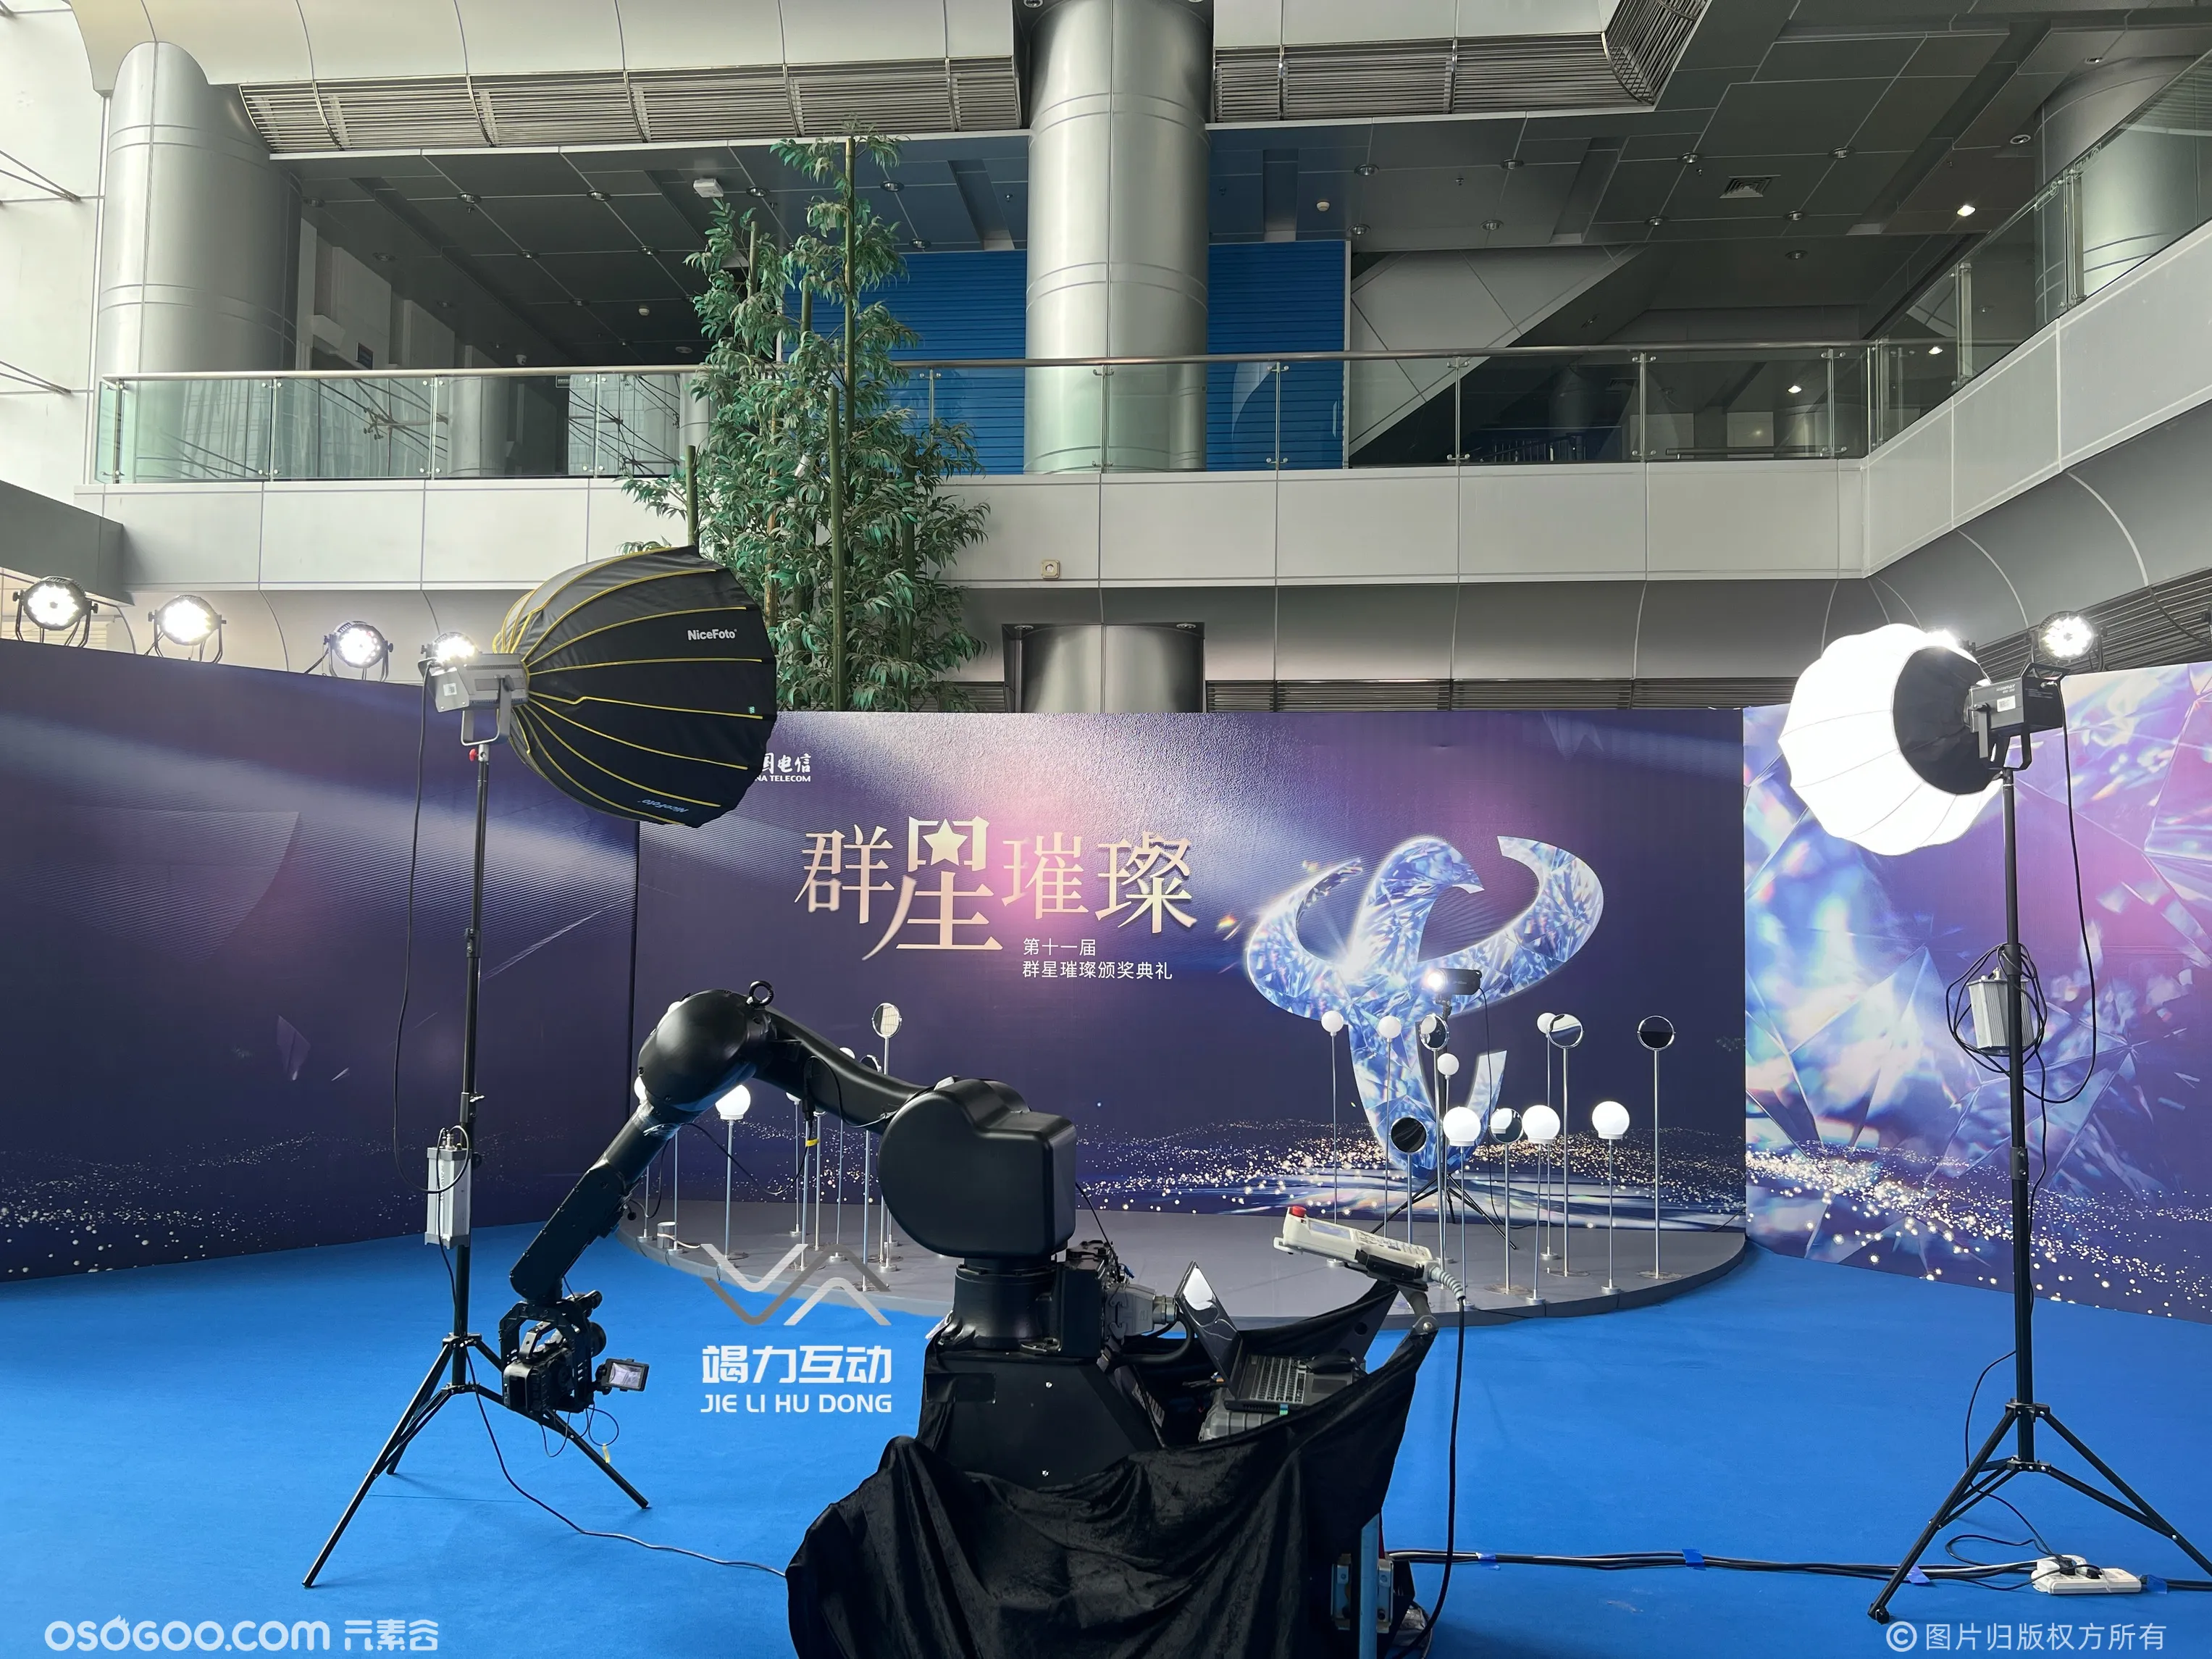 中国电信群星颁奖格莱美机械臂拍照